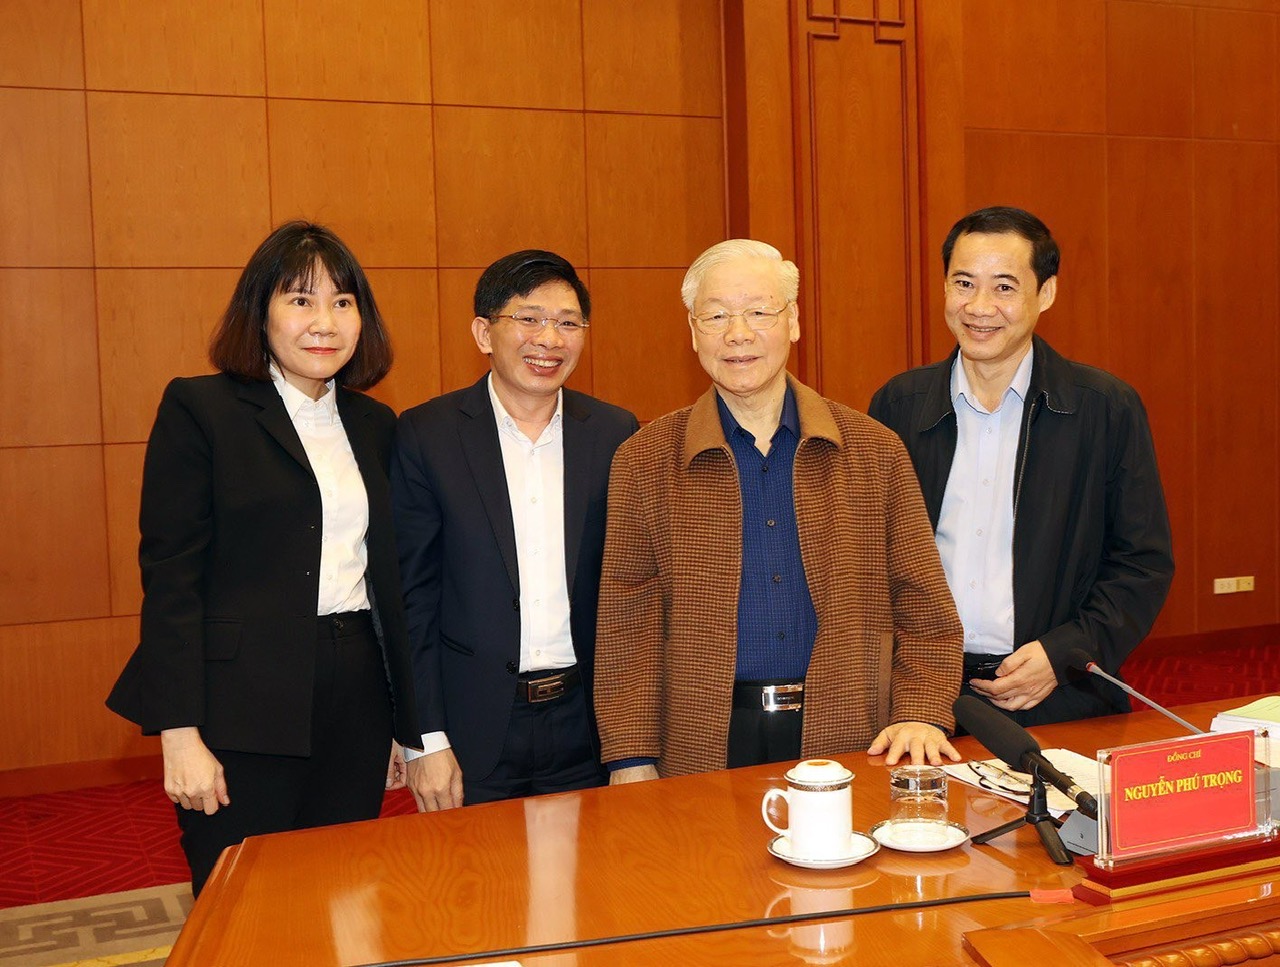 Tổng Bí thư Nguyễn Phú Trọng chụp hình lưu niệm với đồng chí Nguyễn Thái Học và các đại biểu